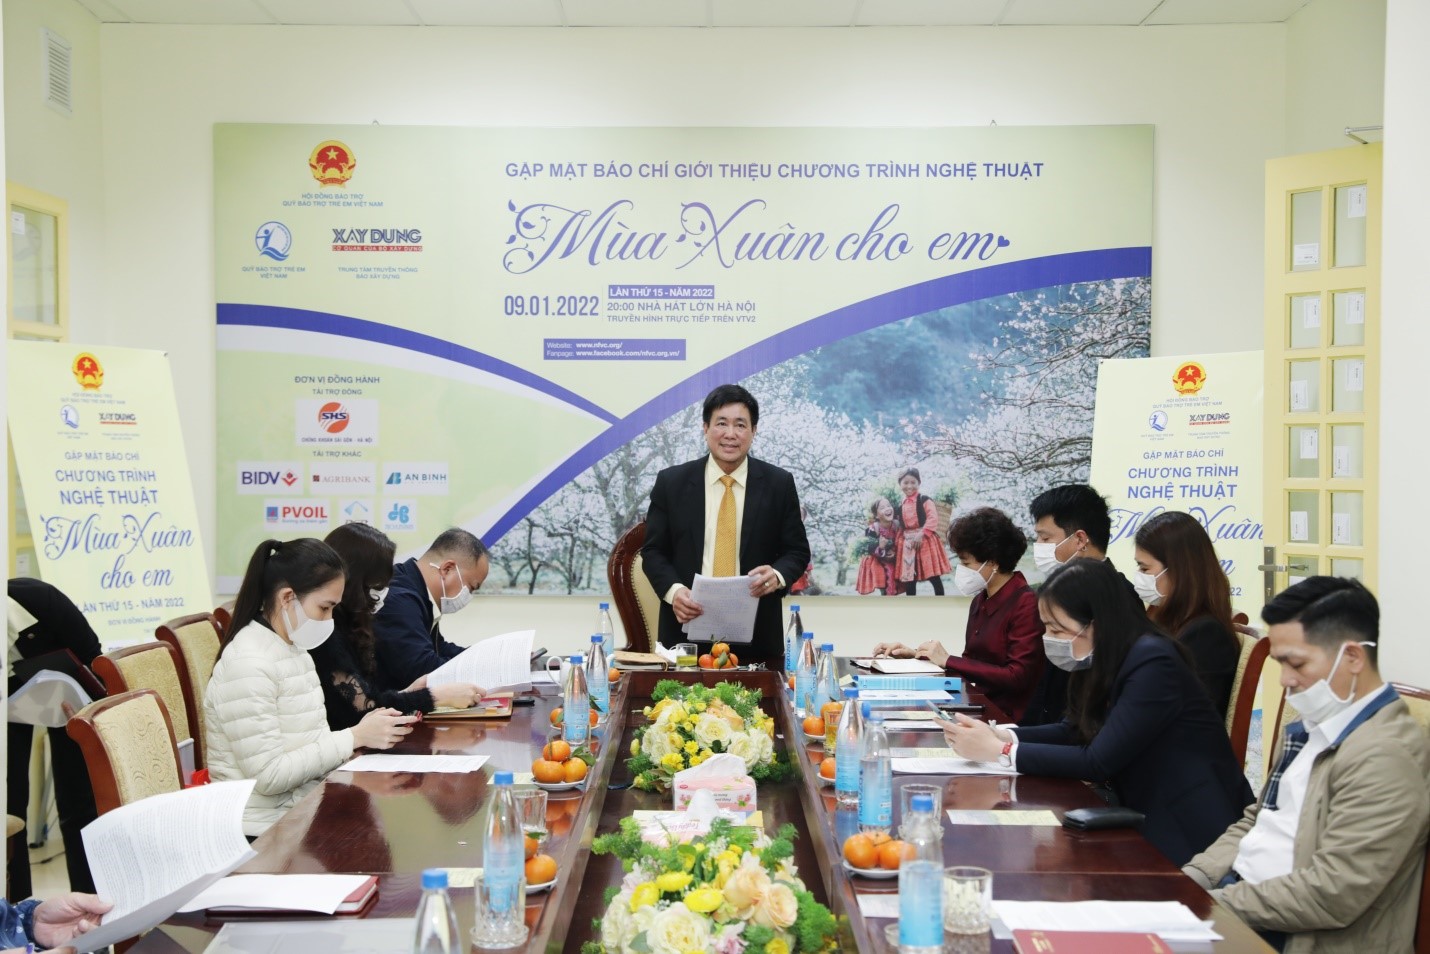 Hoàng Văn Tiến – Giám đốc Quỹ Bảo trợ trẻ em Việt Nam phát biểu tại sự kiện